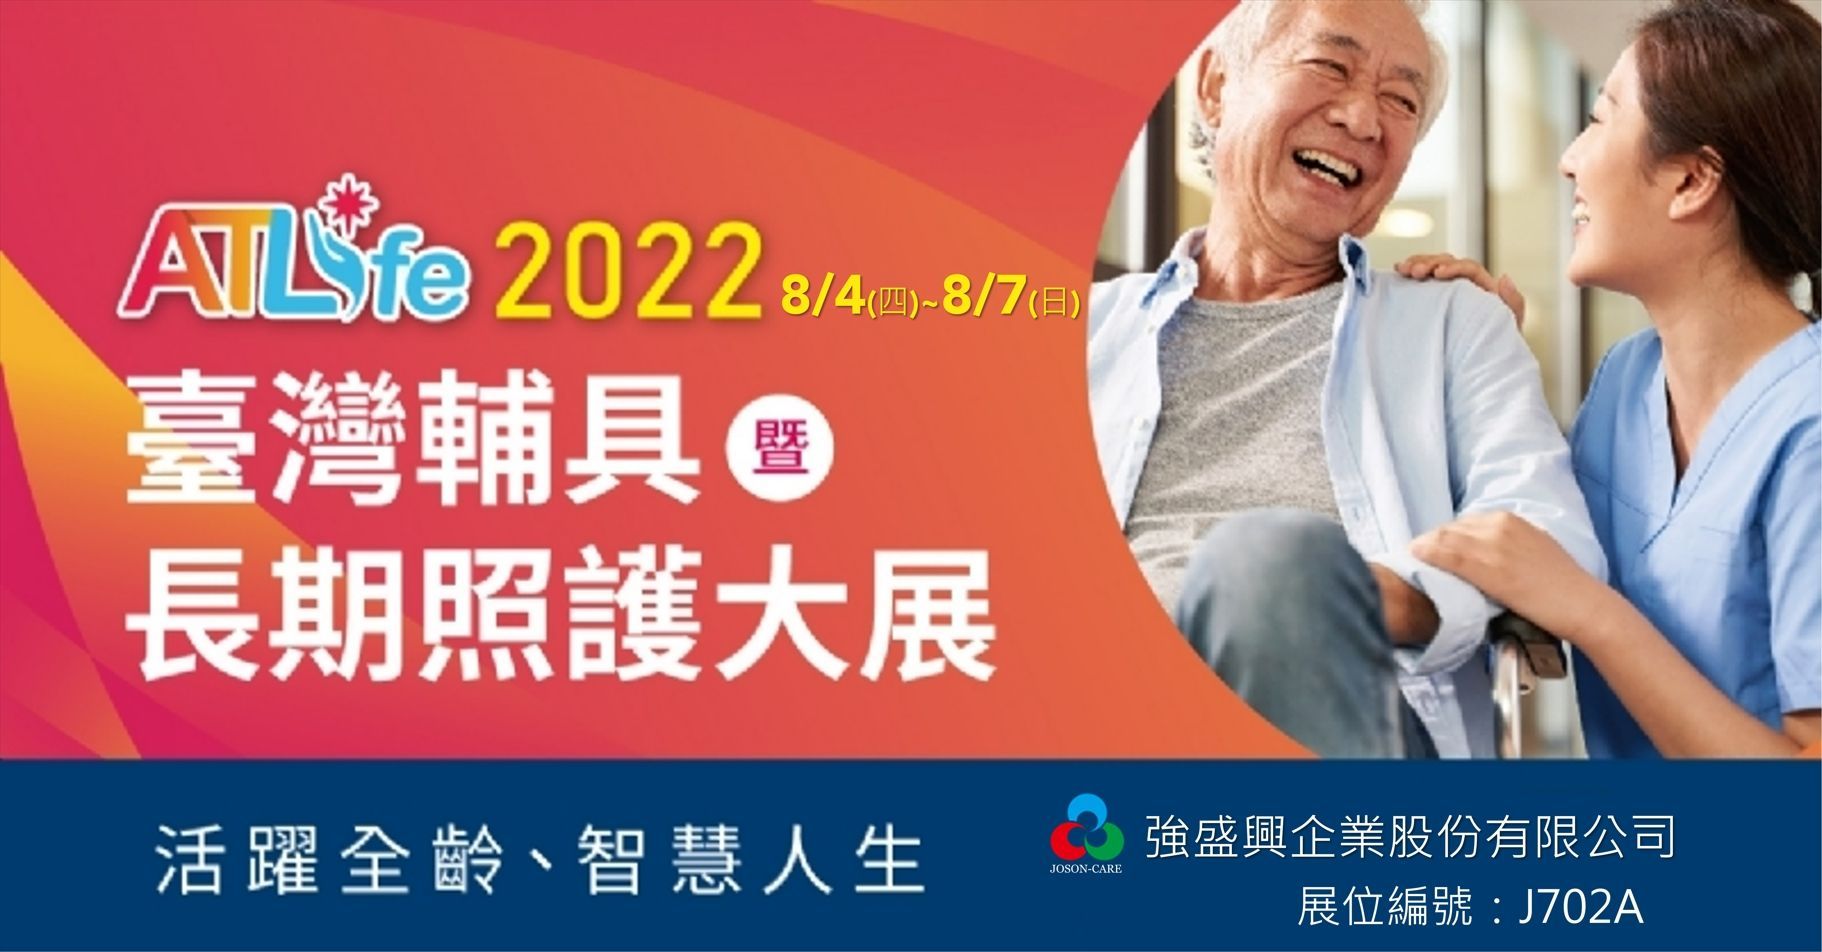 2022ATLife台湾辅具暨长期照护大展